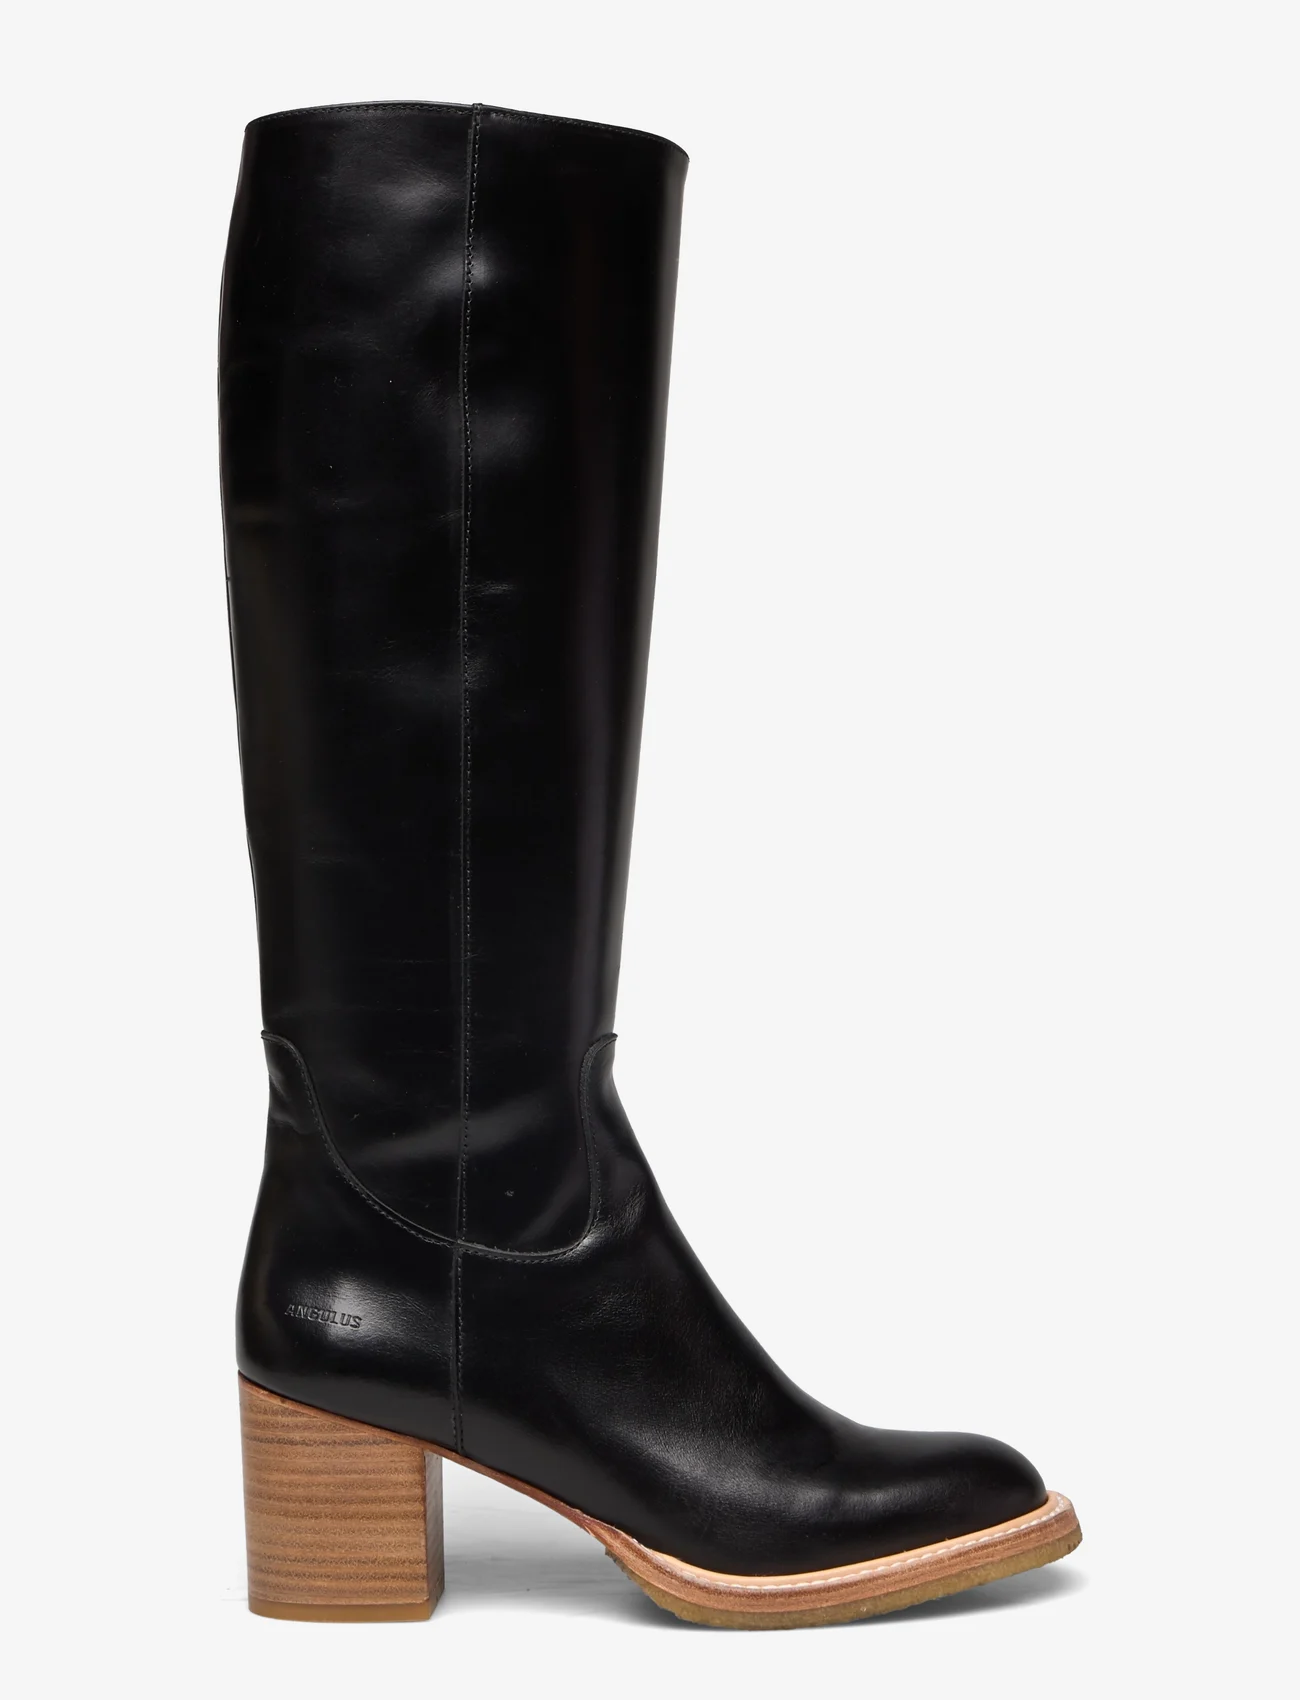 ANGULUS - Bootie - block heel - with zippe - lange stiefel - 1835/001 black/black - 1